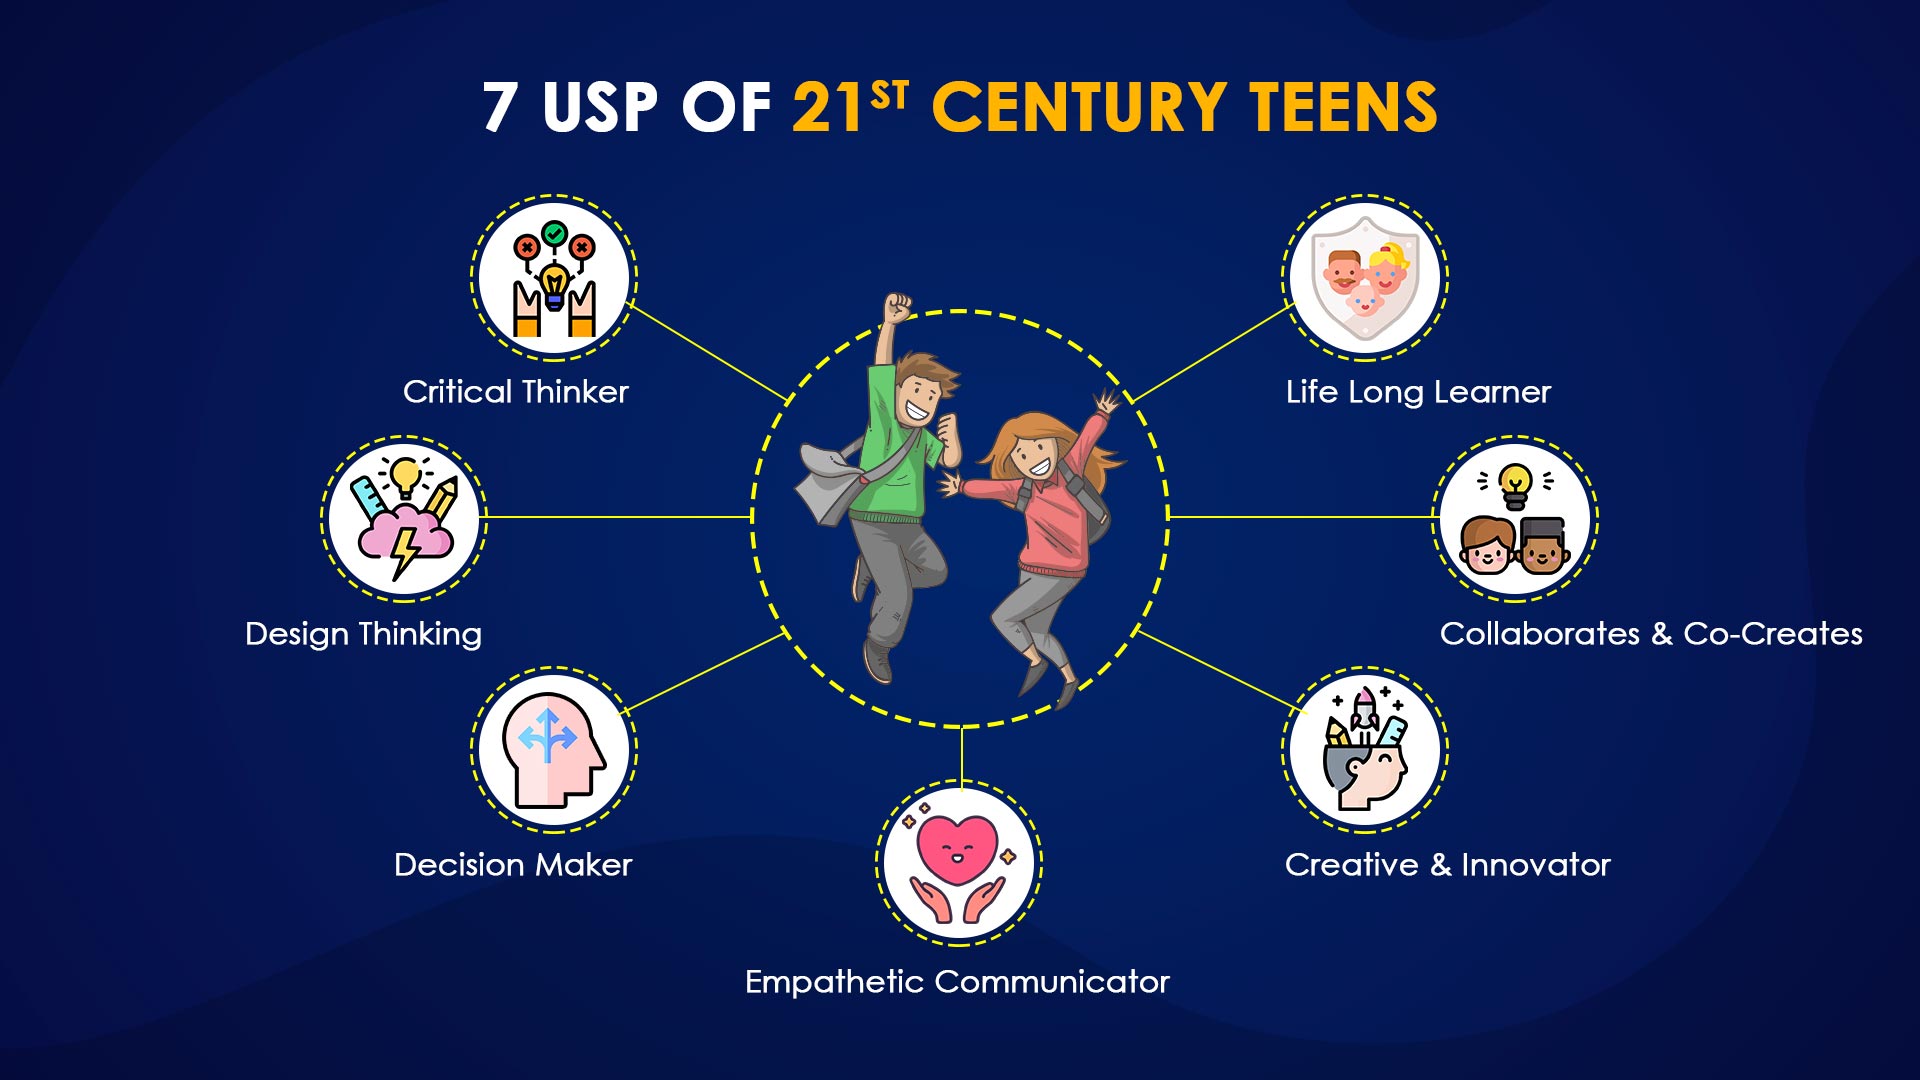 7 USP OF 21 ST CENTURY TEENS